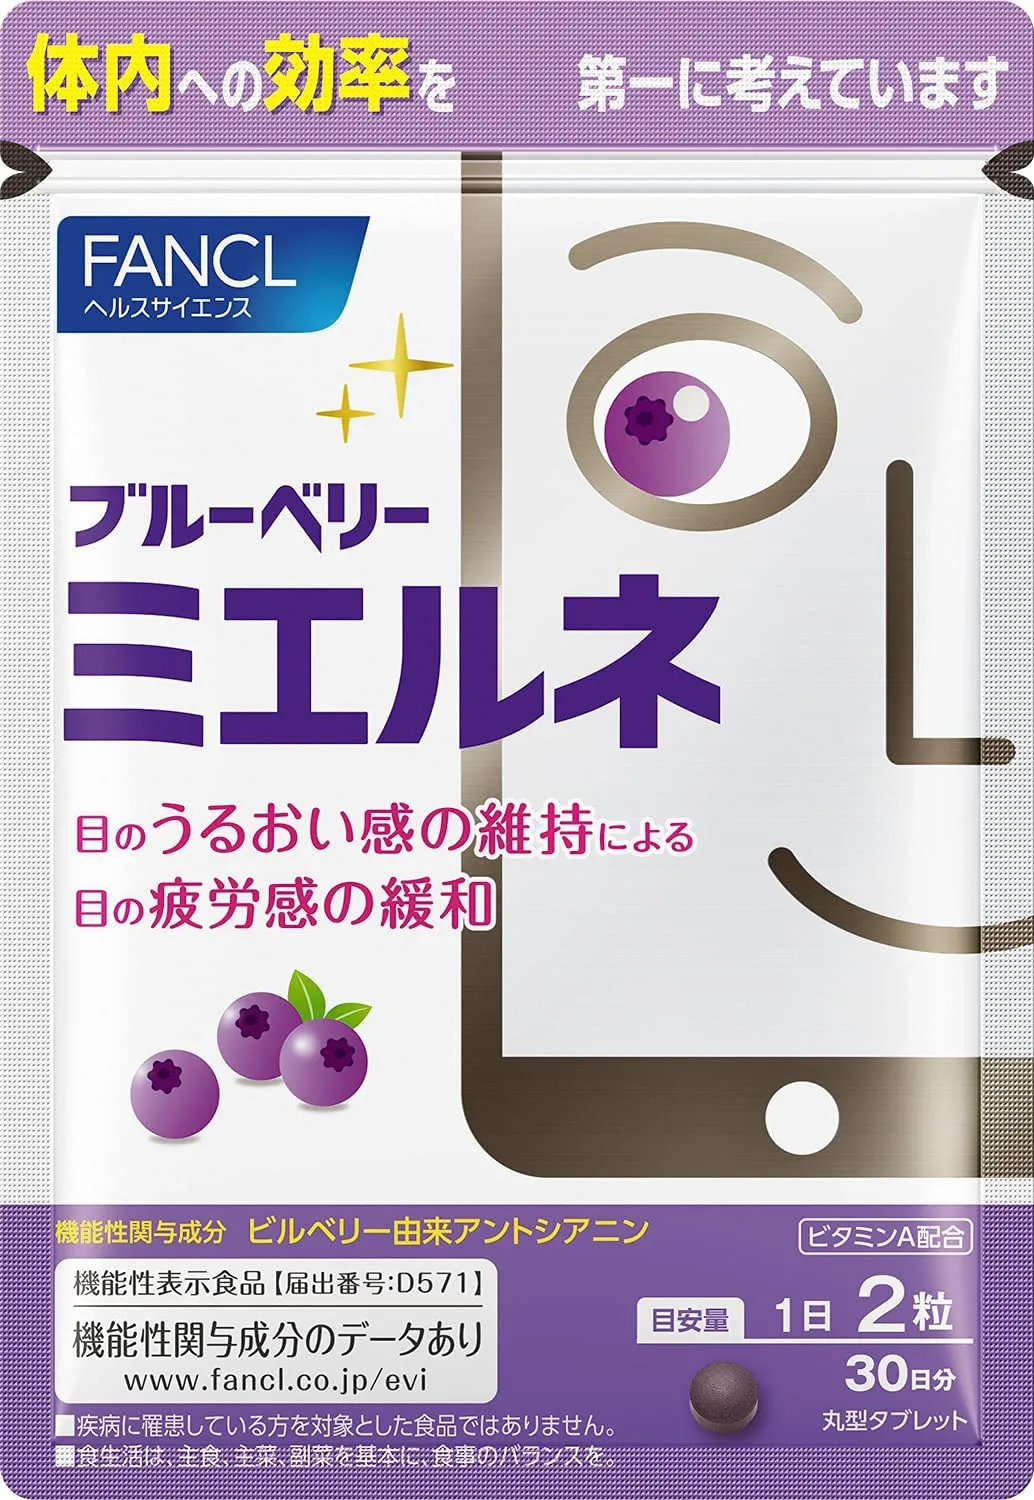 Комплексная добавка "Смартголик"для поддержки зрения для тех. кто проводит много времени за телефоном и компьютером Fancl Blueberry Smartphone Supplement Focus Adjustment